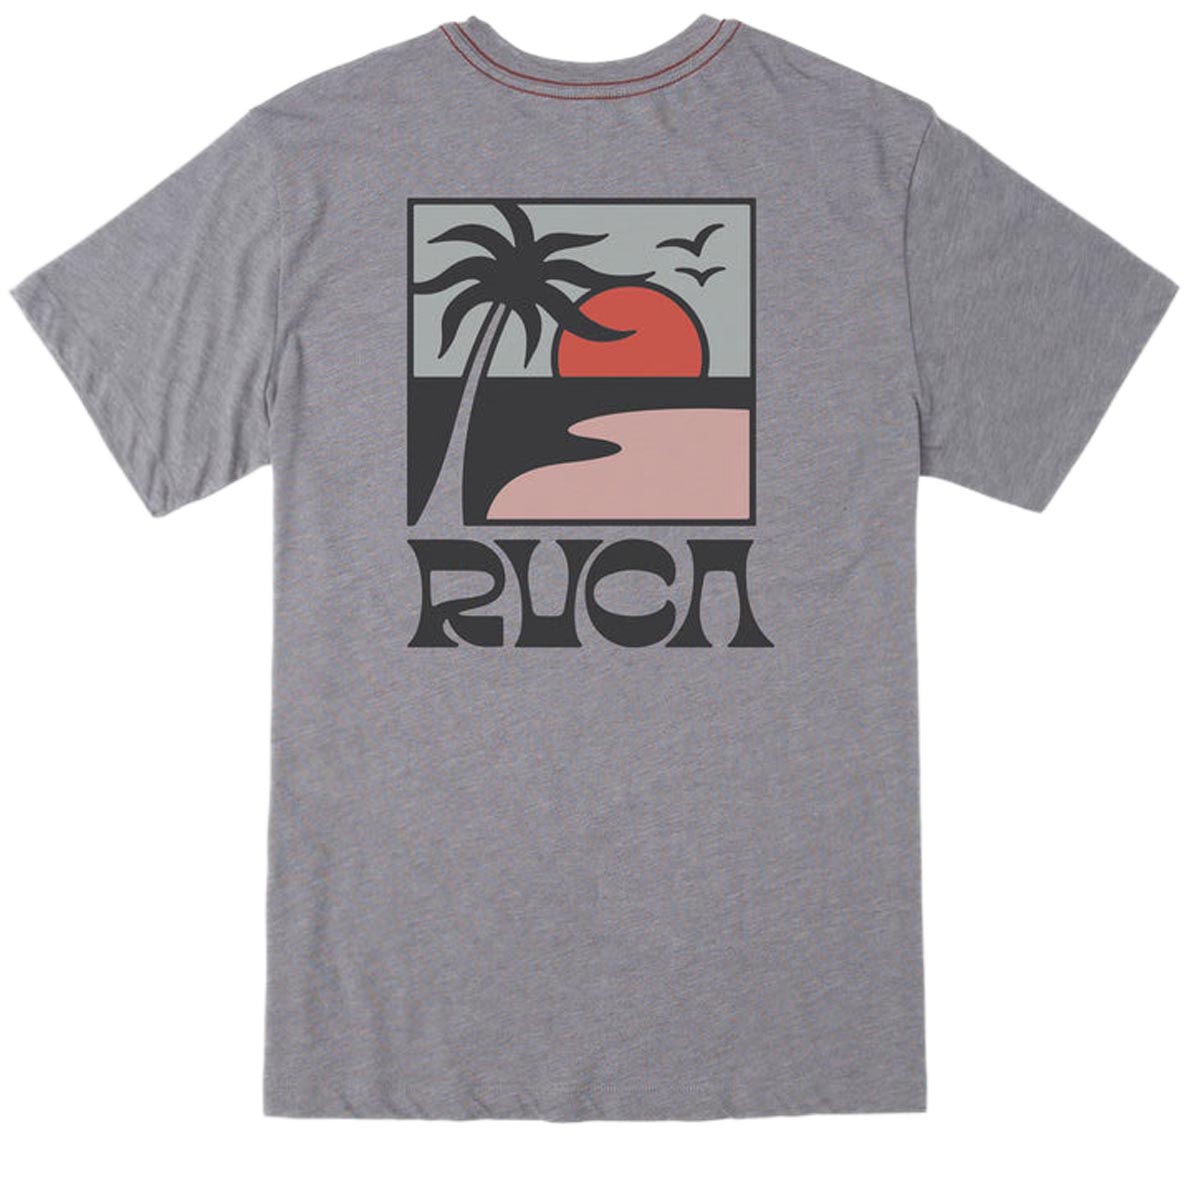 RVCA Palm Set T-Shirt - Smoke image 1